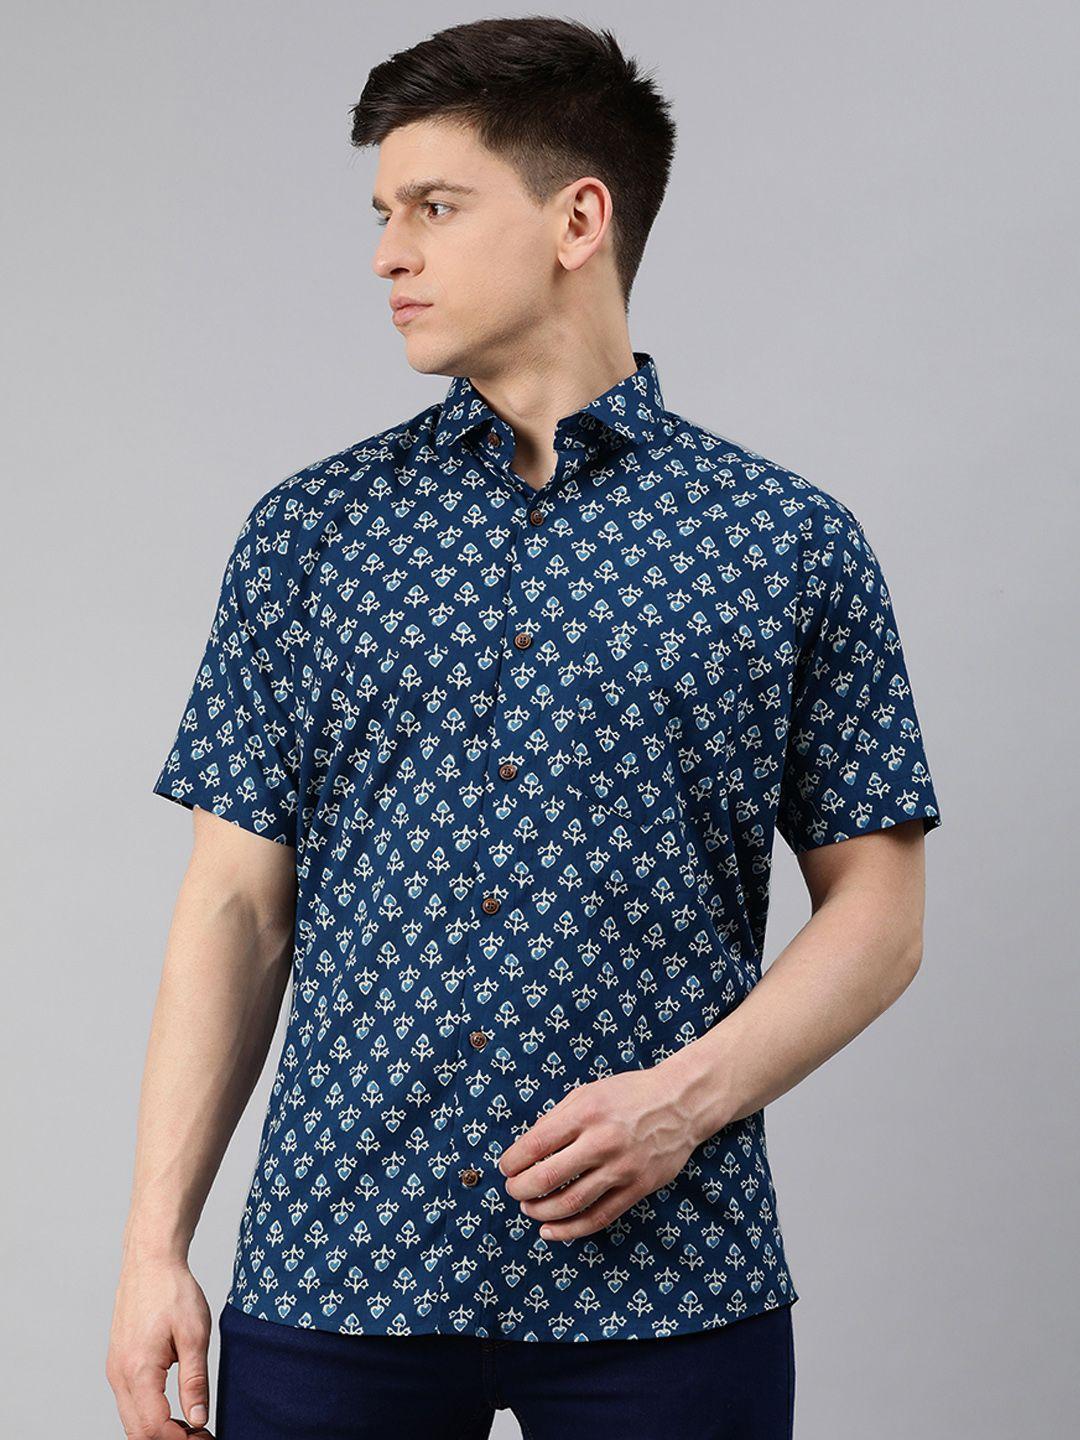 millennial men teal blue & green comfort regular fit printed pure cotton casual shirt